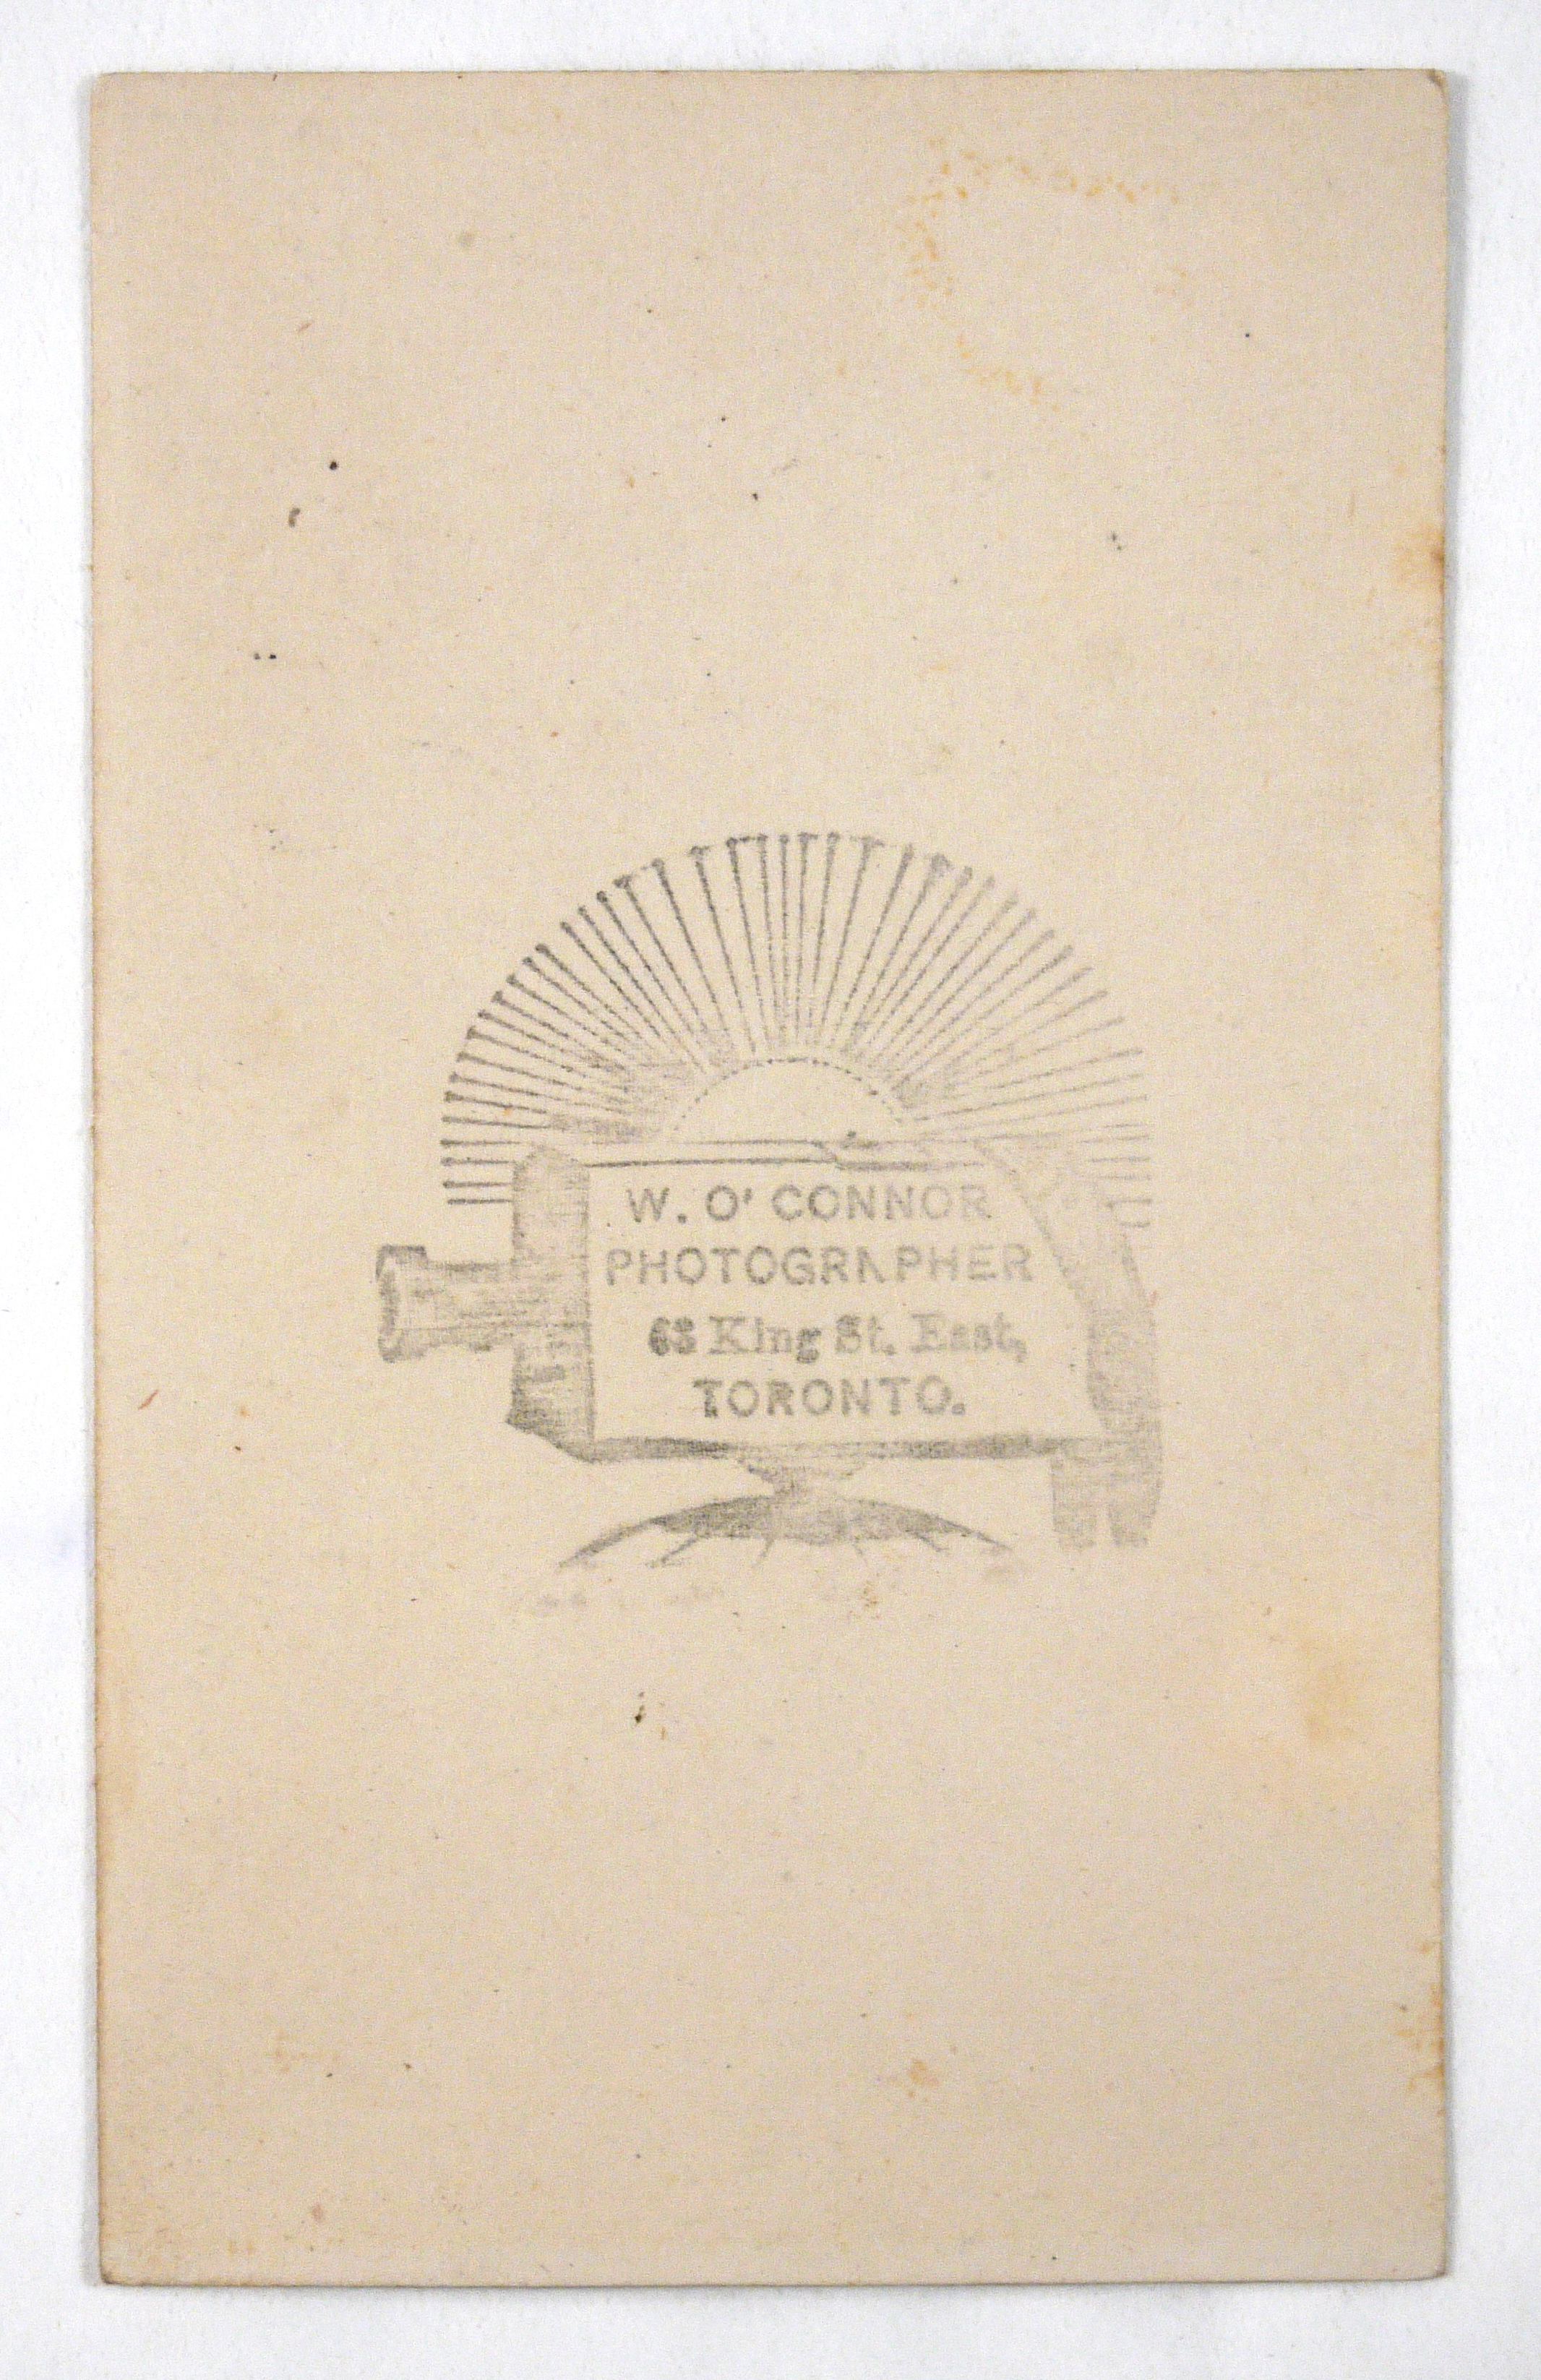 Book Conservation: A 19th Century Carte de Visite Photograph Album